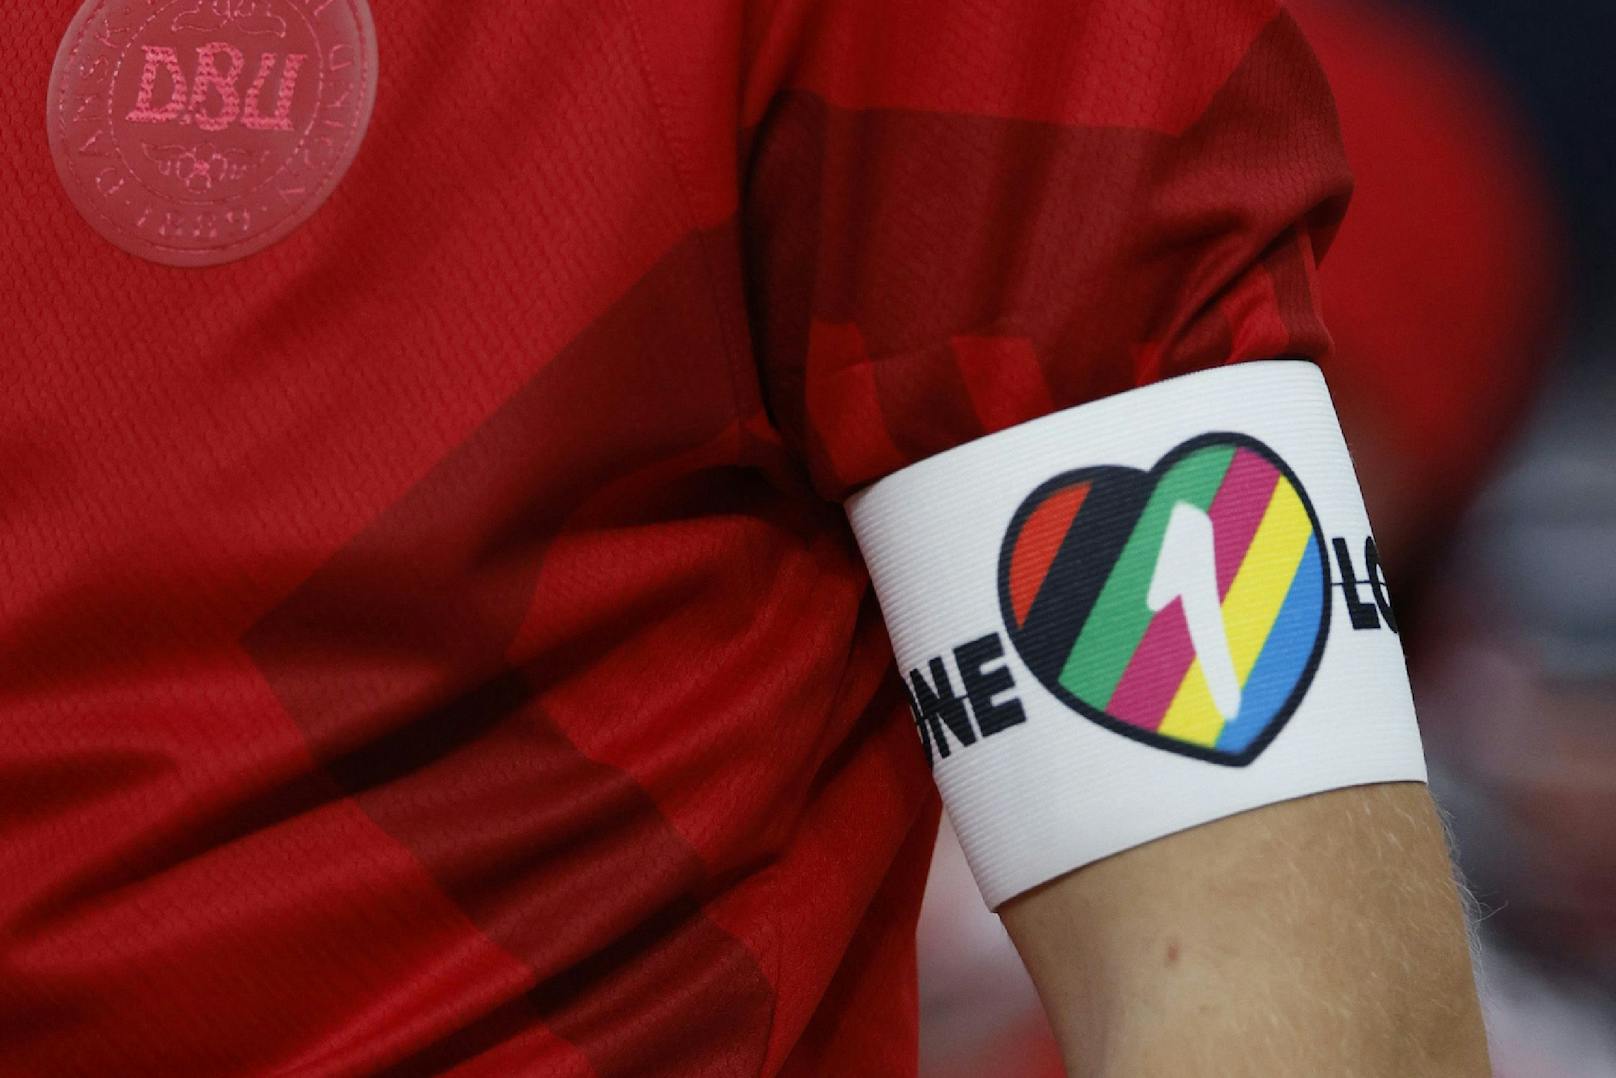 Ein früher WM-Aufreger: Die FIFA verbot den Kapitänen das Tragen dieser "One Love"-Kapitänsbinde, drohte Strafen an.